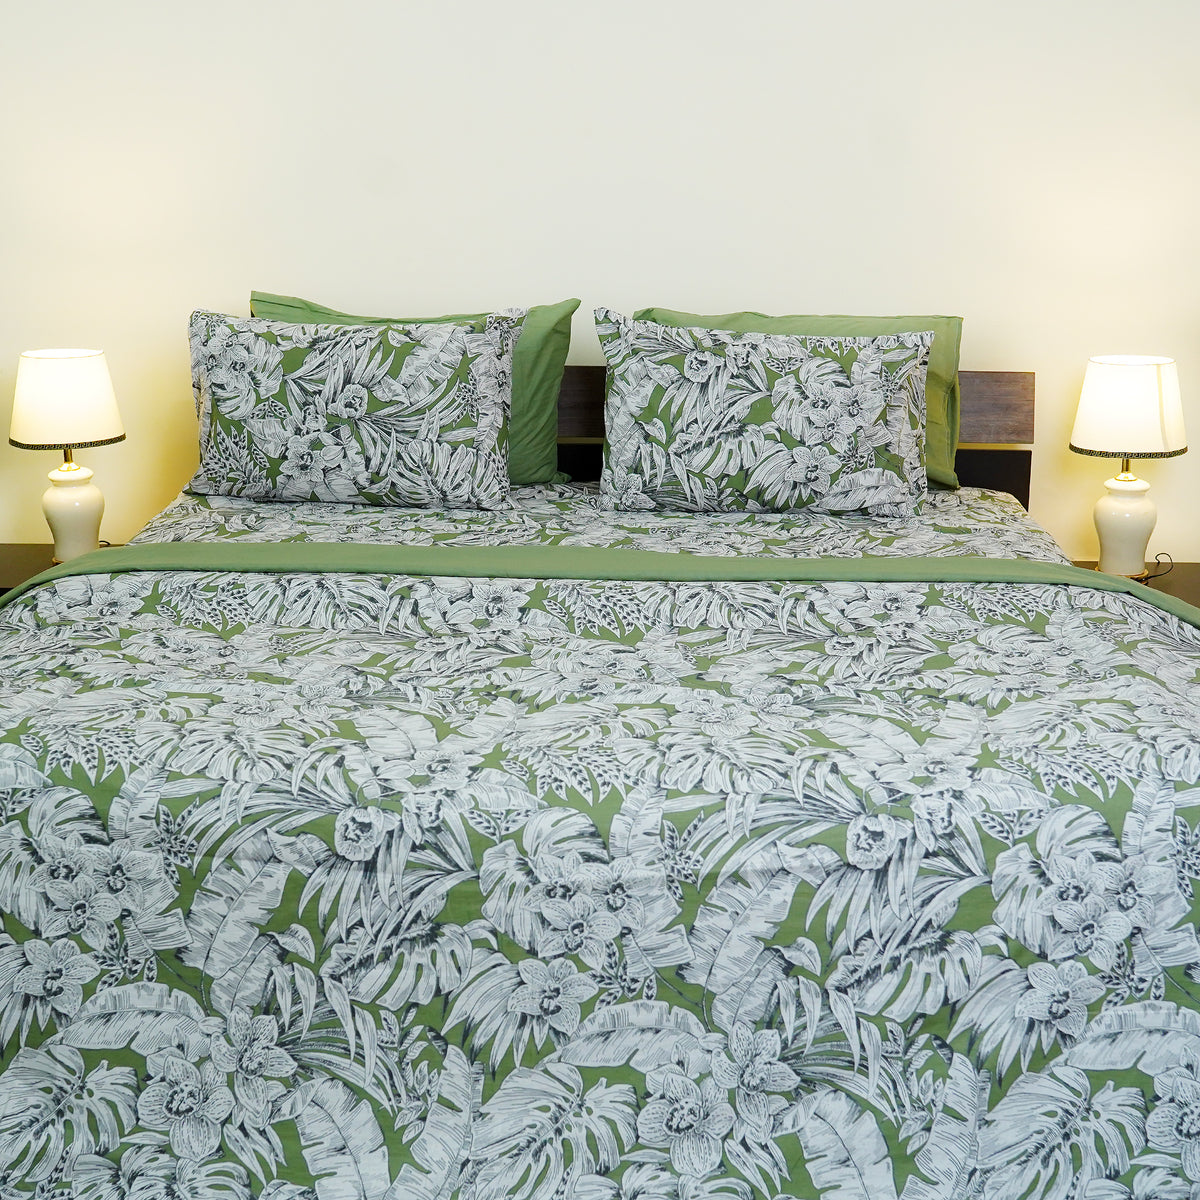 Botanical Bliss King Duvet Cover & Comforter Set